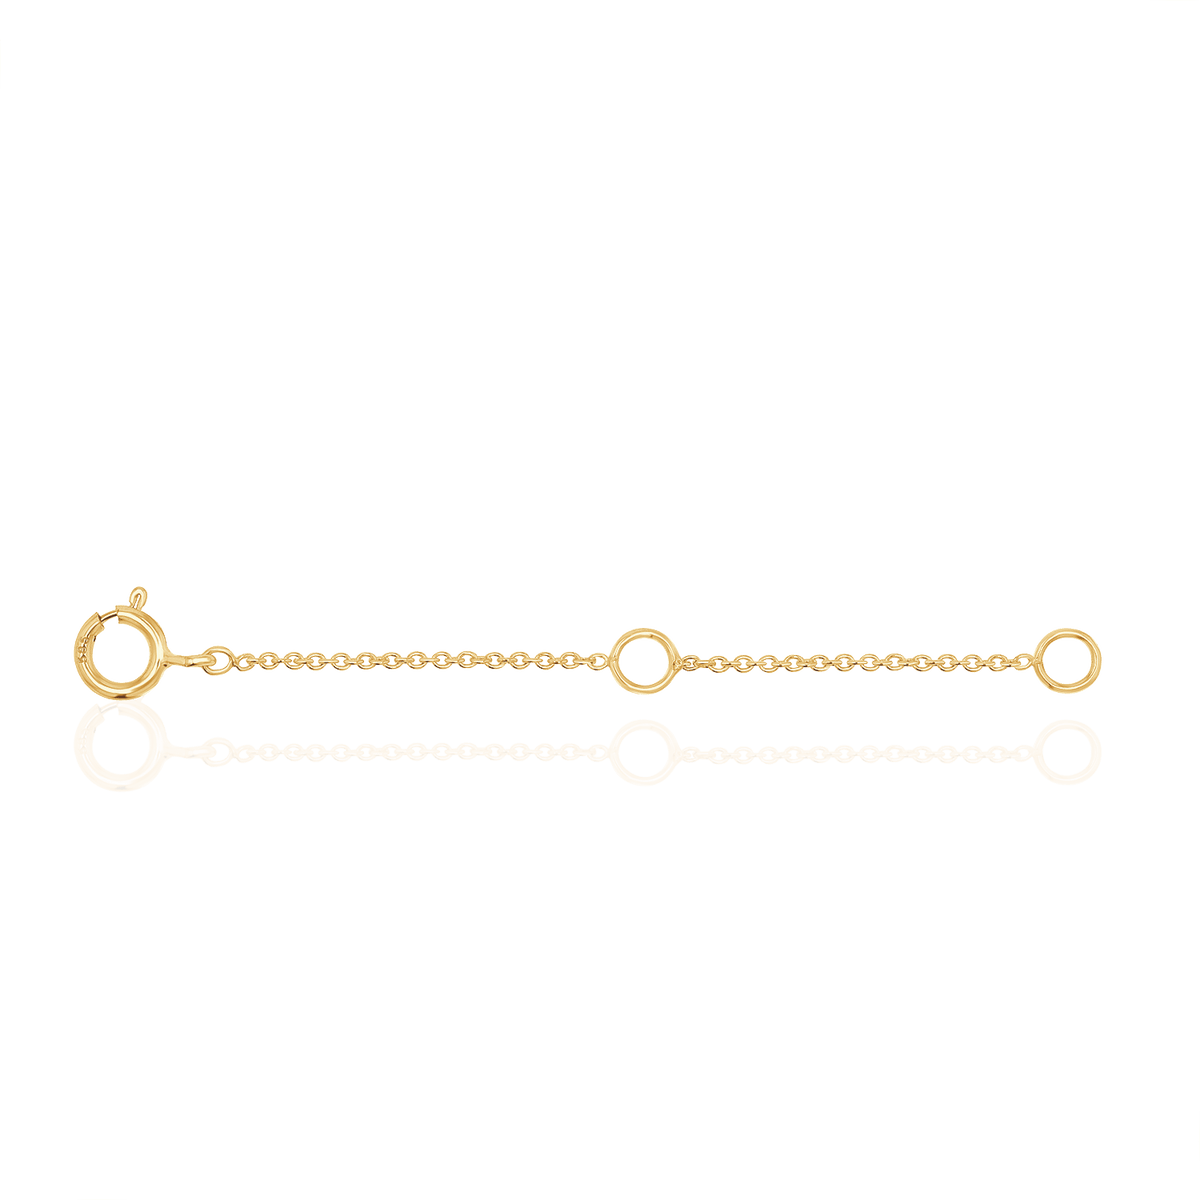 Bracelet Extender Chain